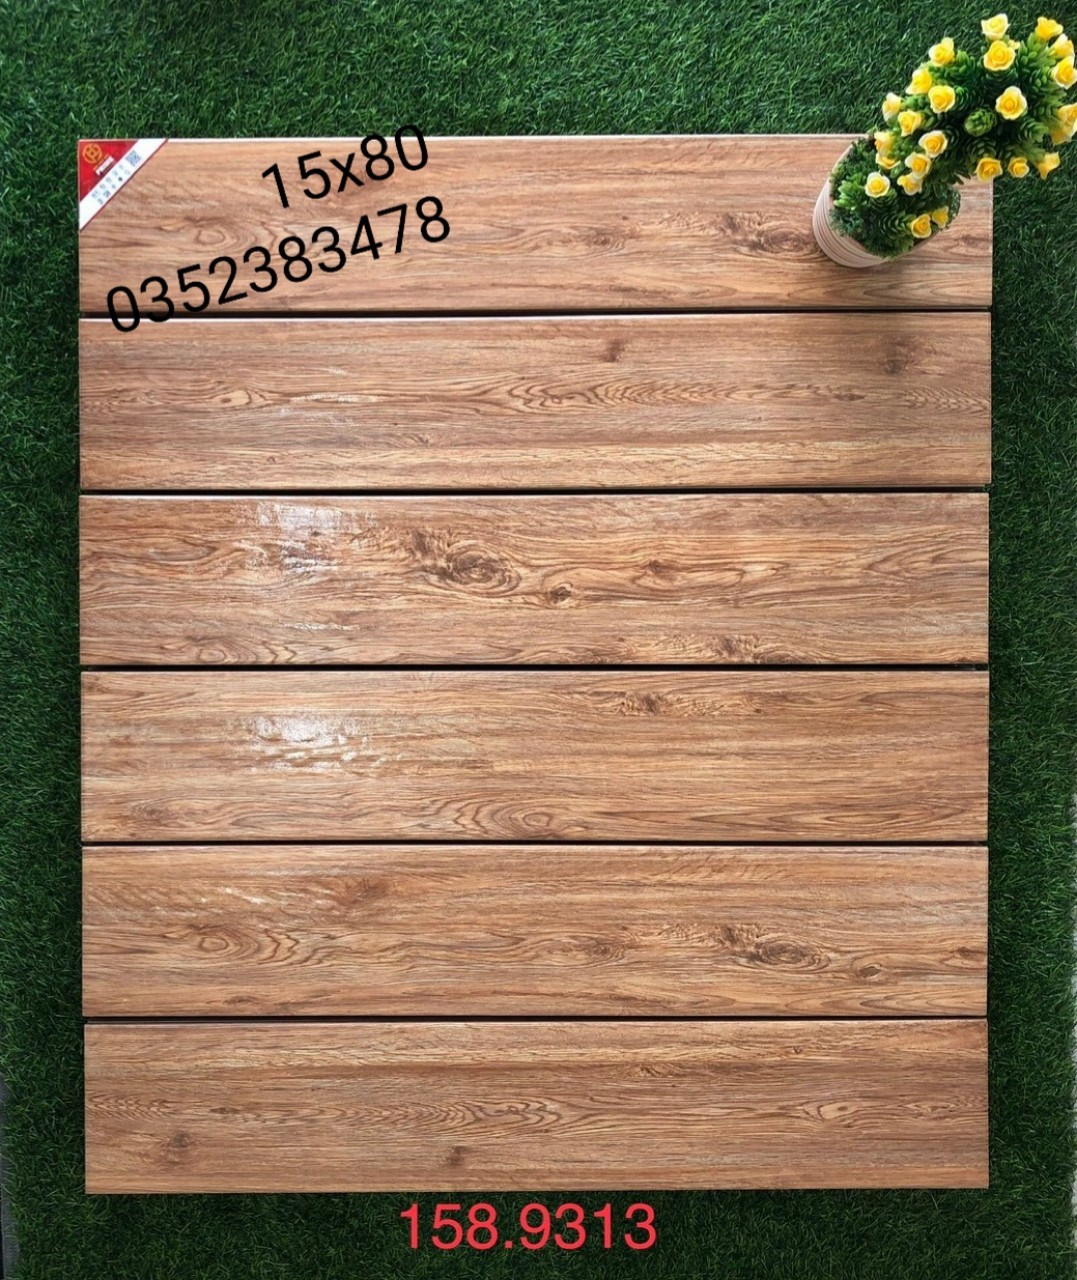 gạch giả gỗ 15x80 cao cấp giá rẻ